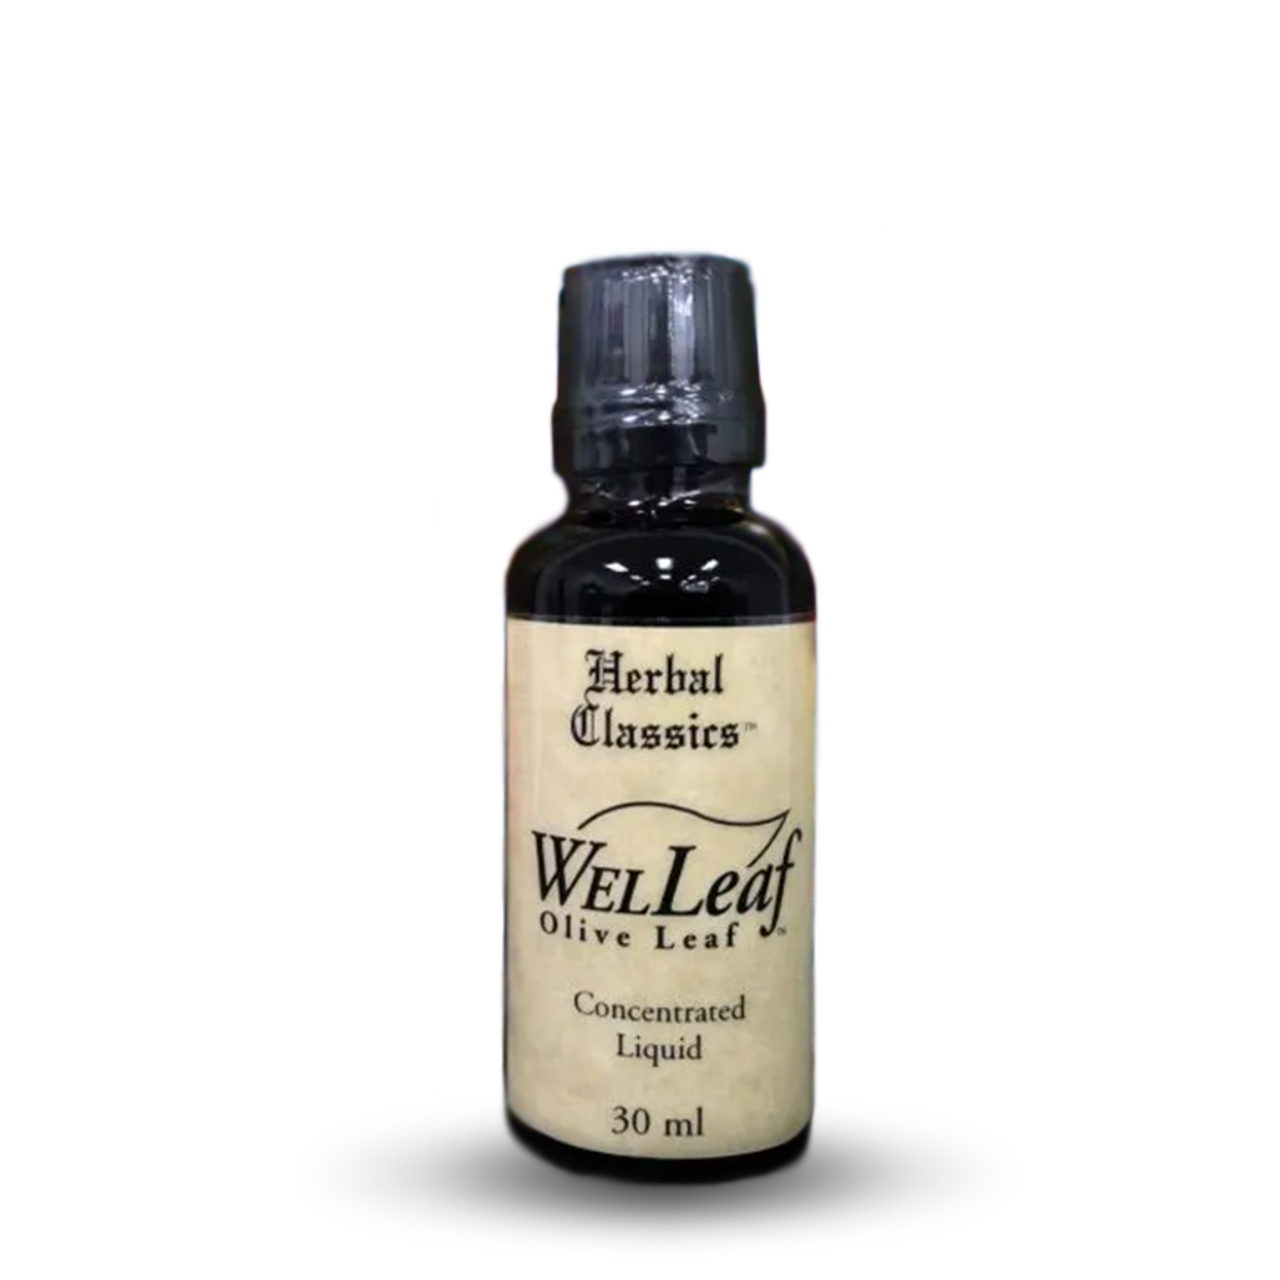 WelLeaf Olive Leaf 30 ml Herbal Classics